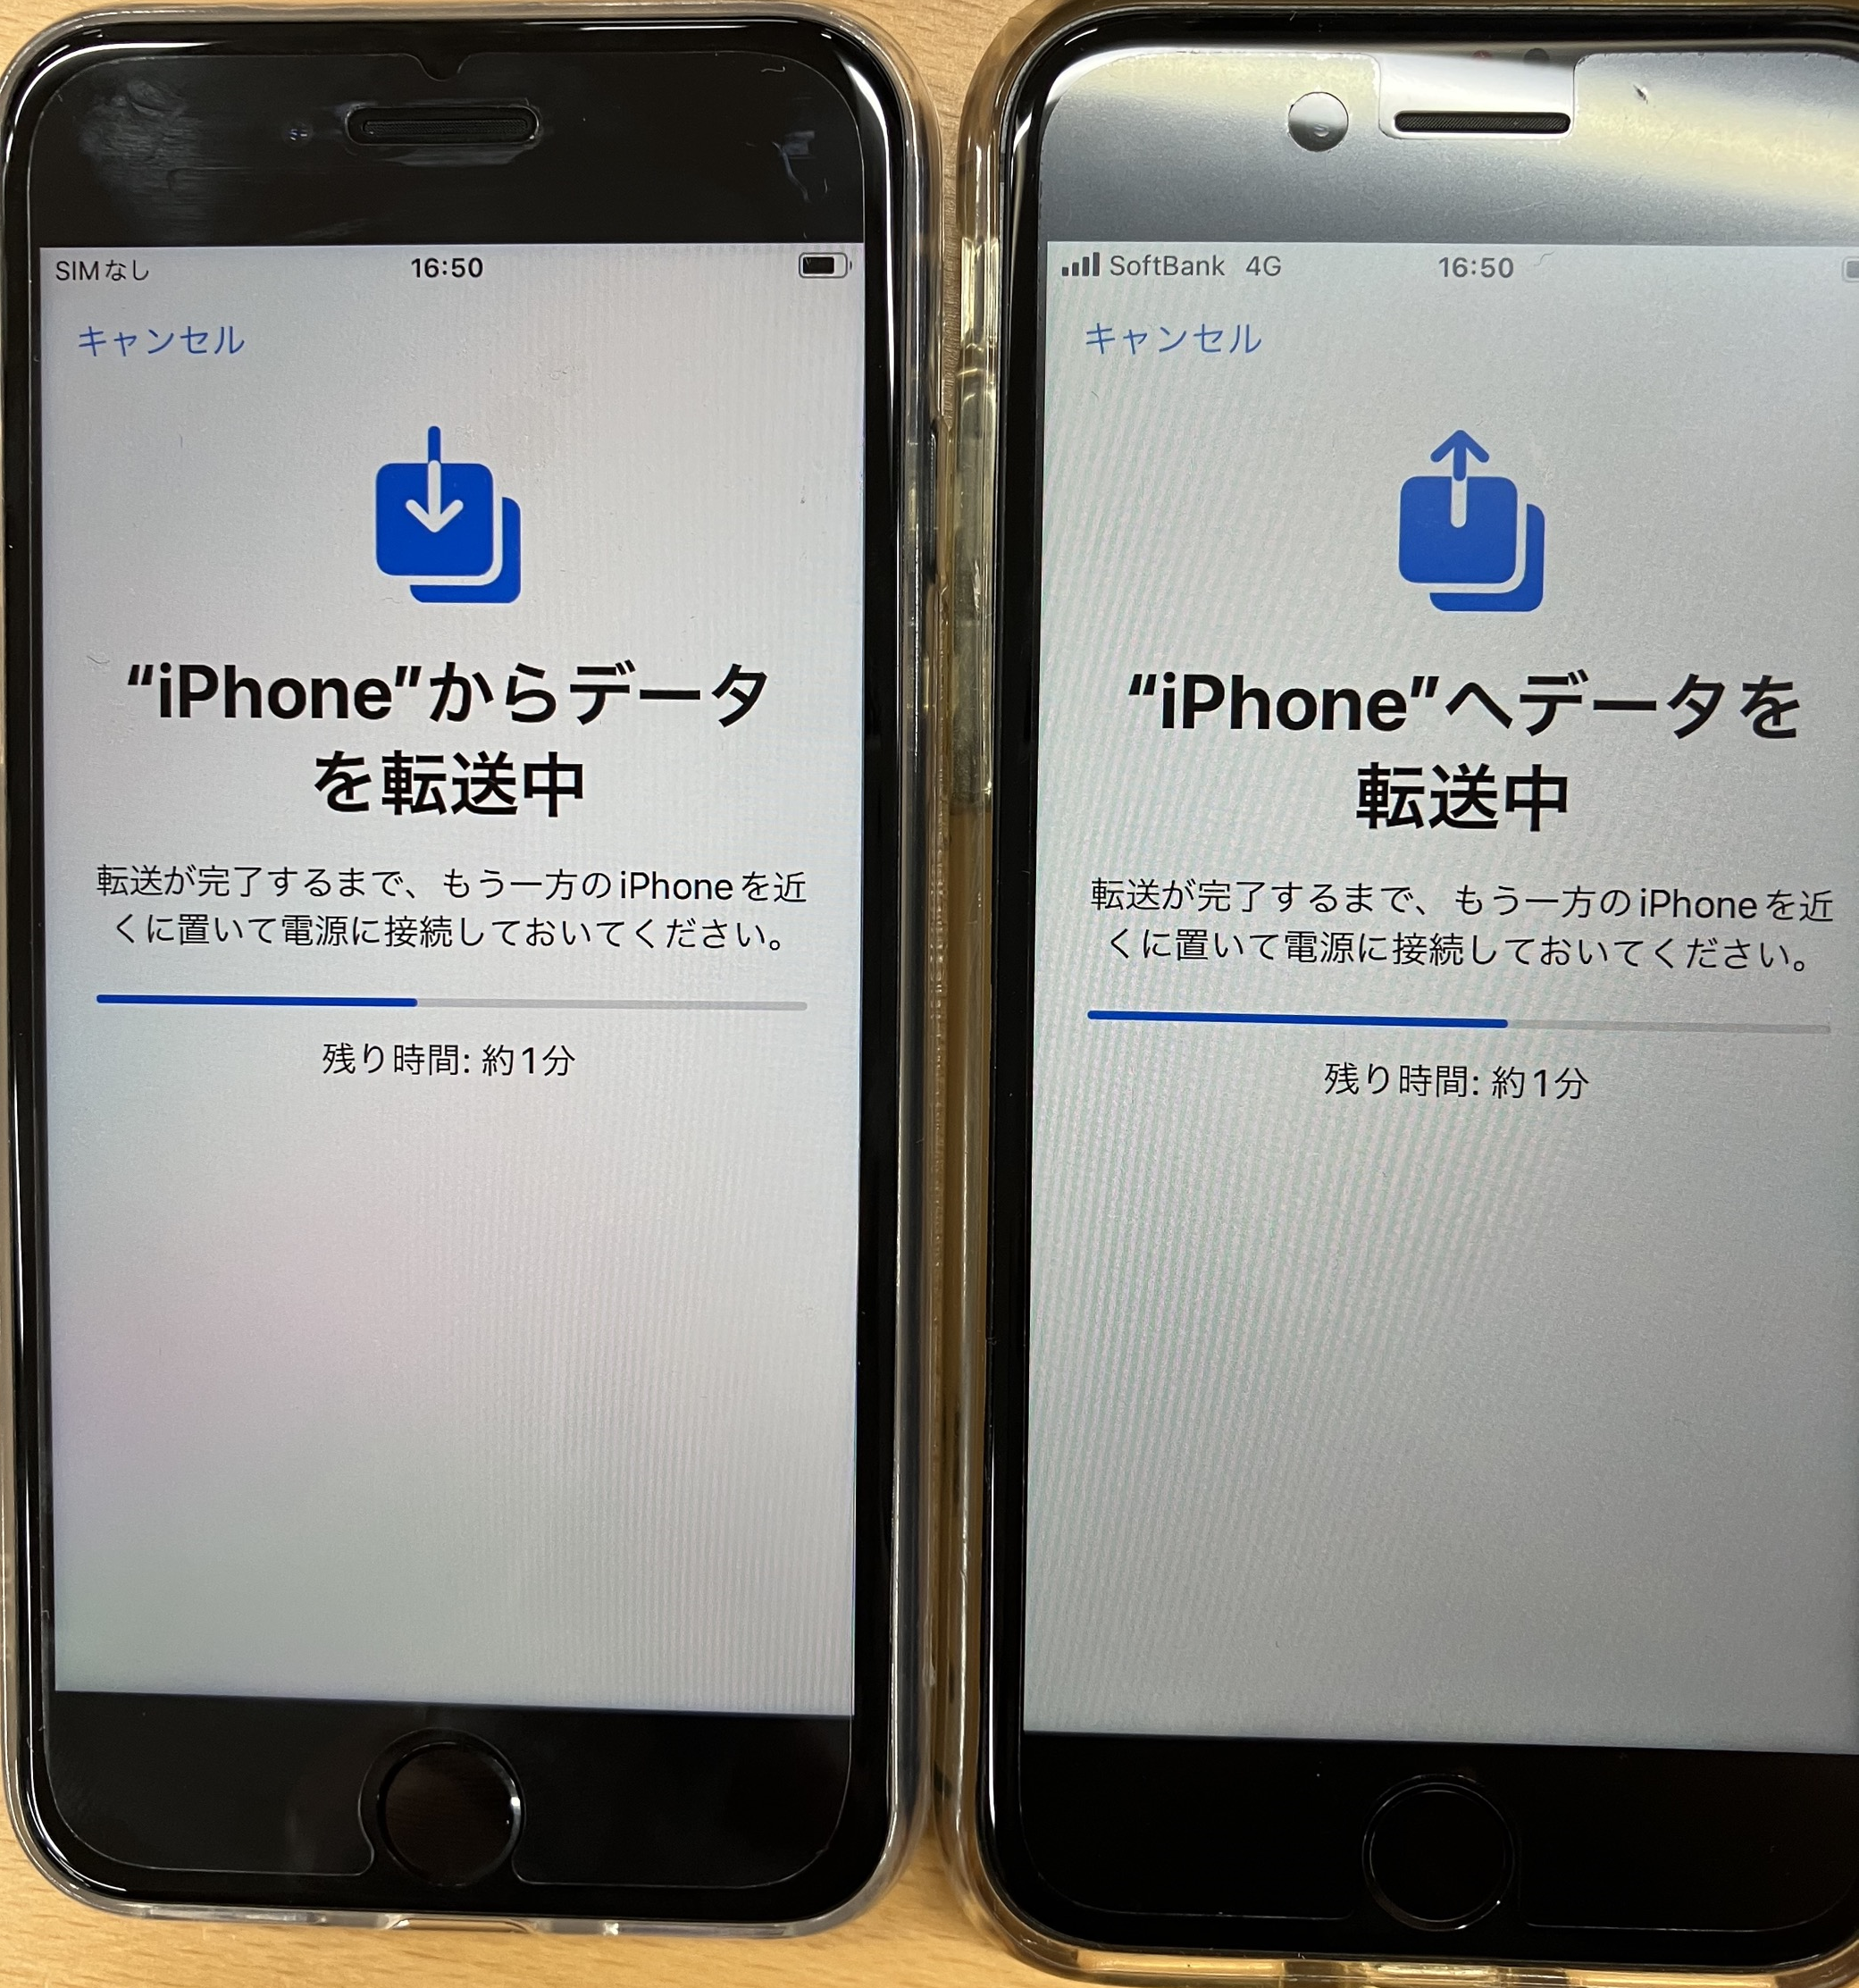 iPhone:古いiPhoneから新しいiPhoneへのデータ転送が開始